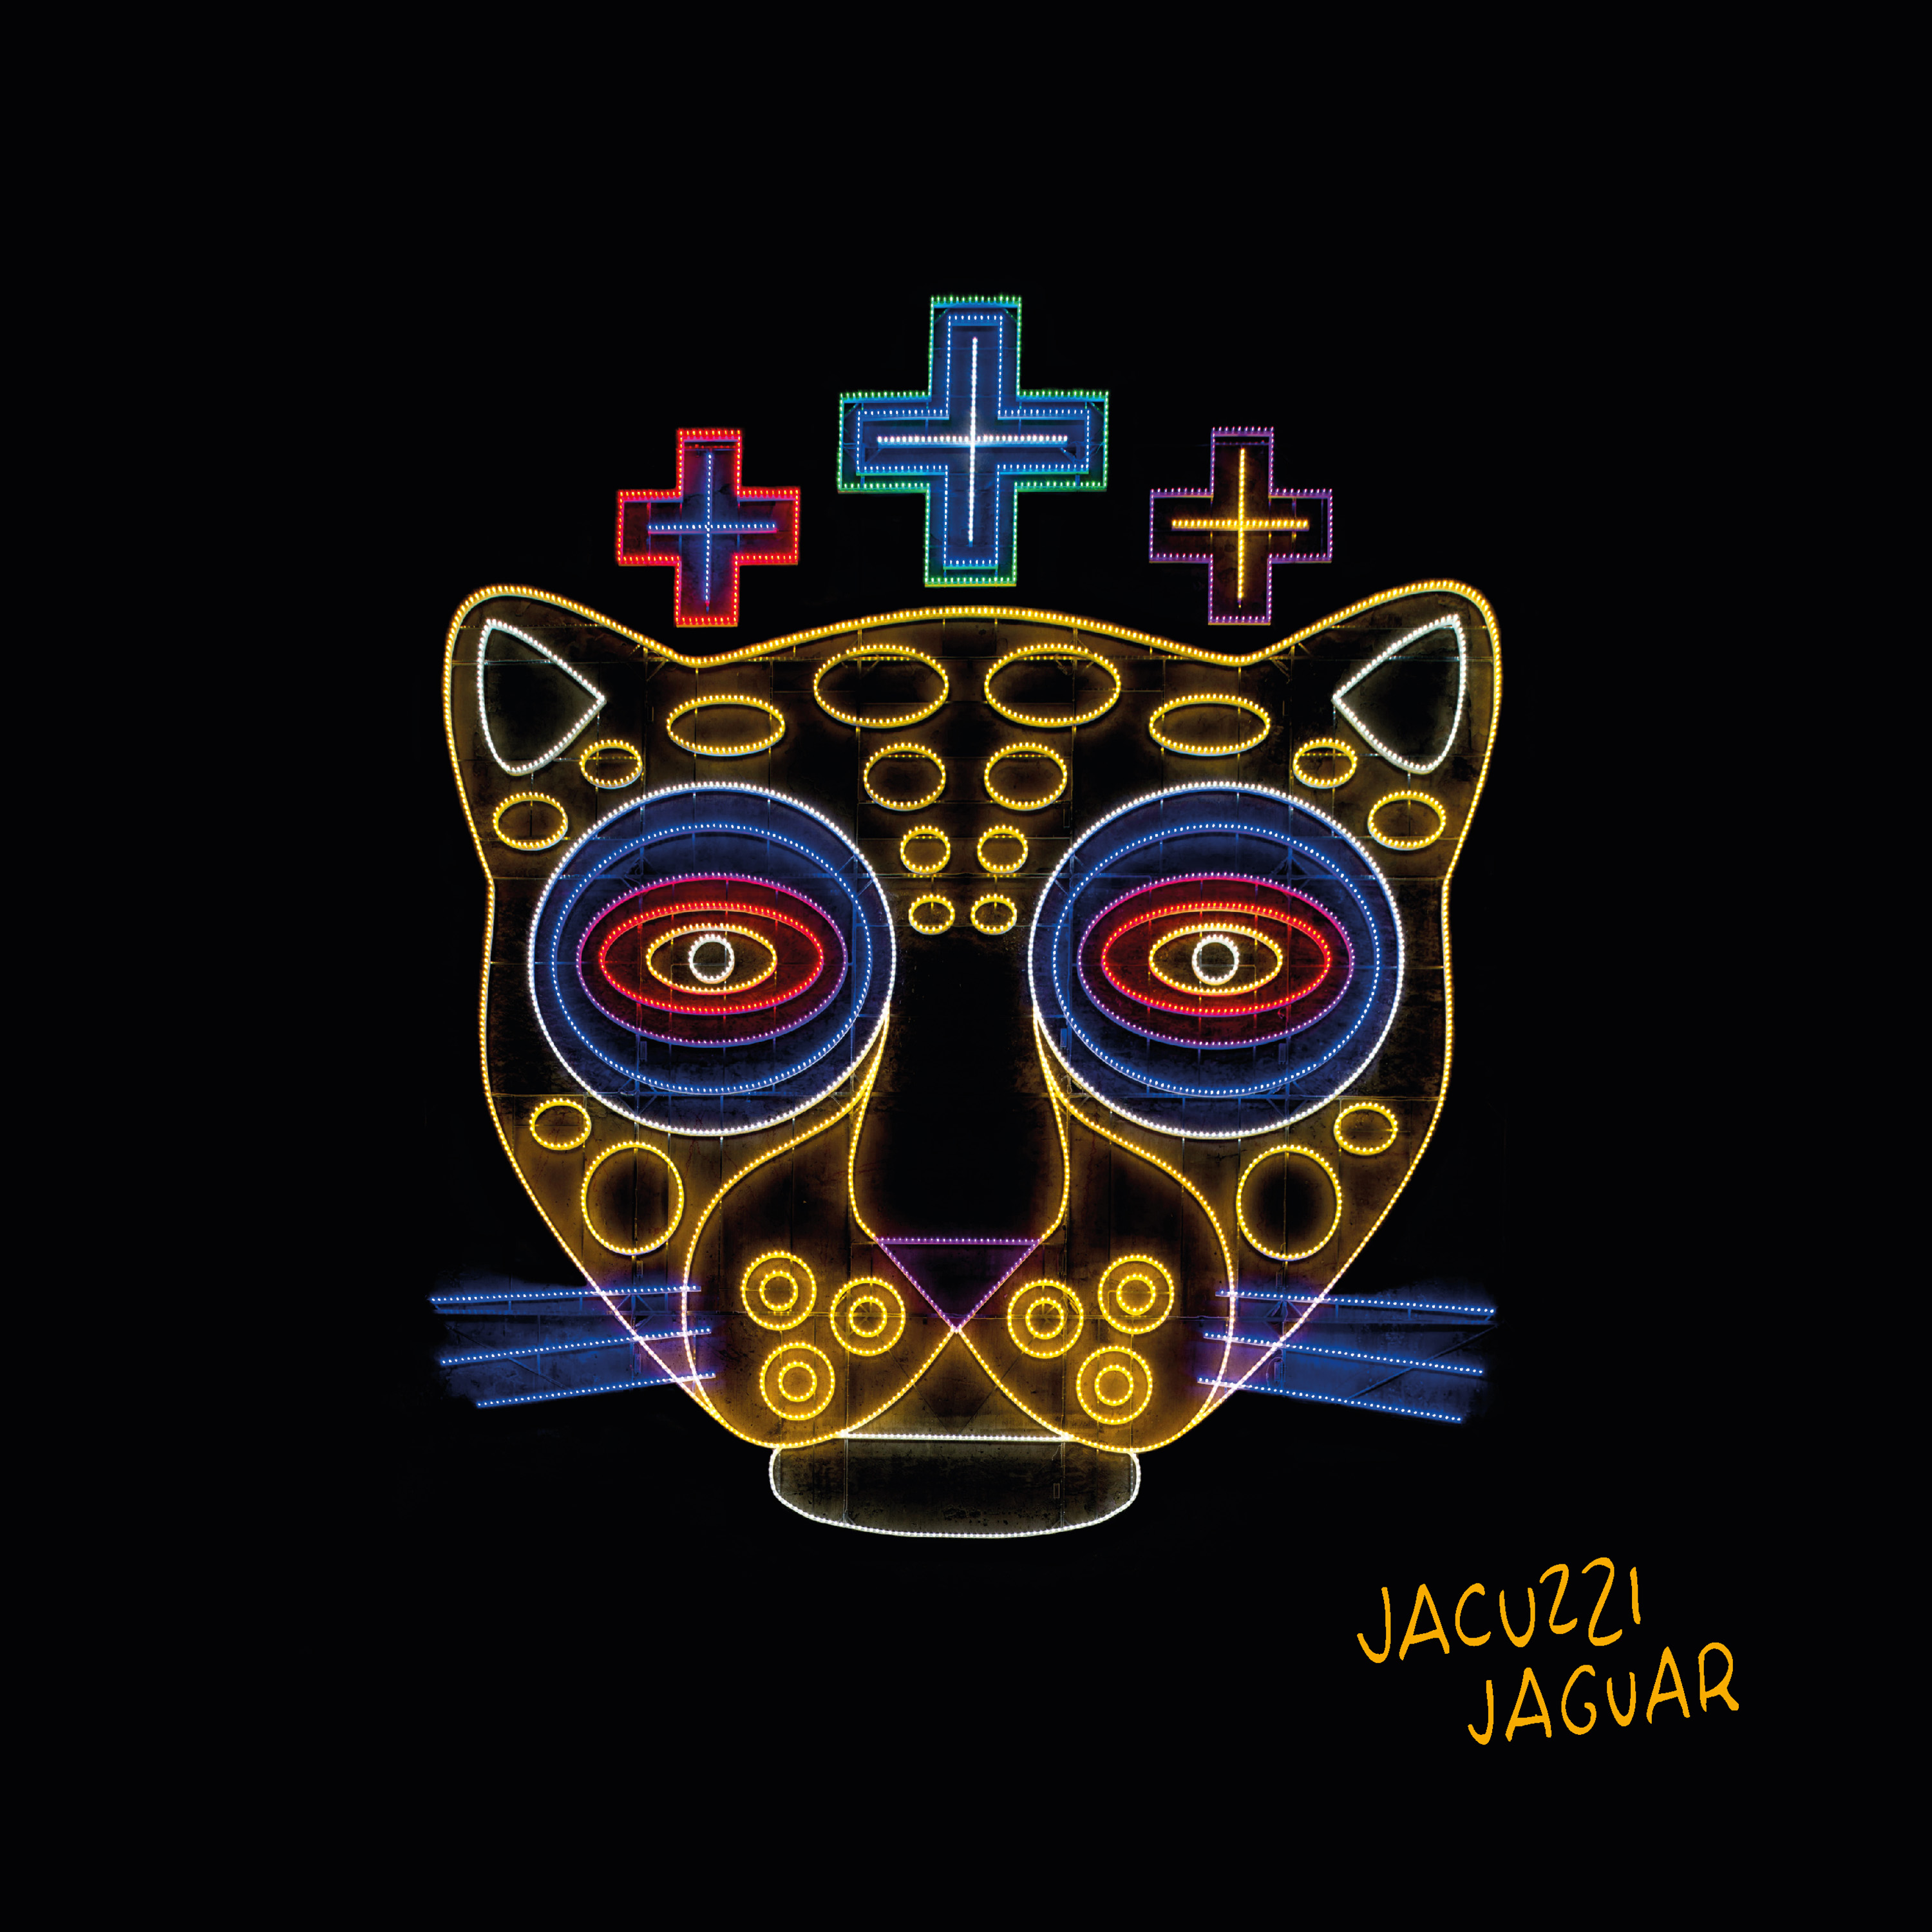 Jacuzzi Jaguar – Décal’Quai, Montreux (VD)